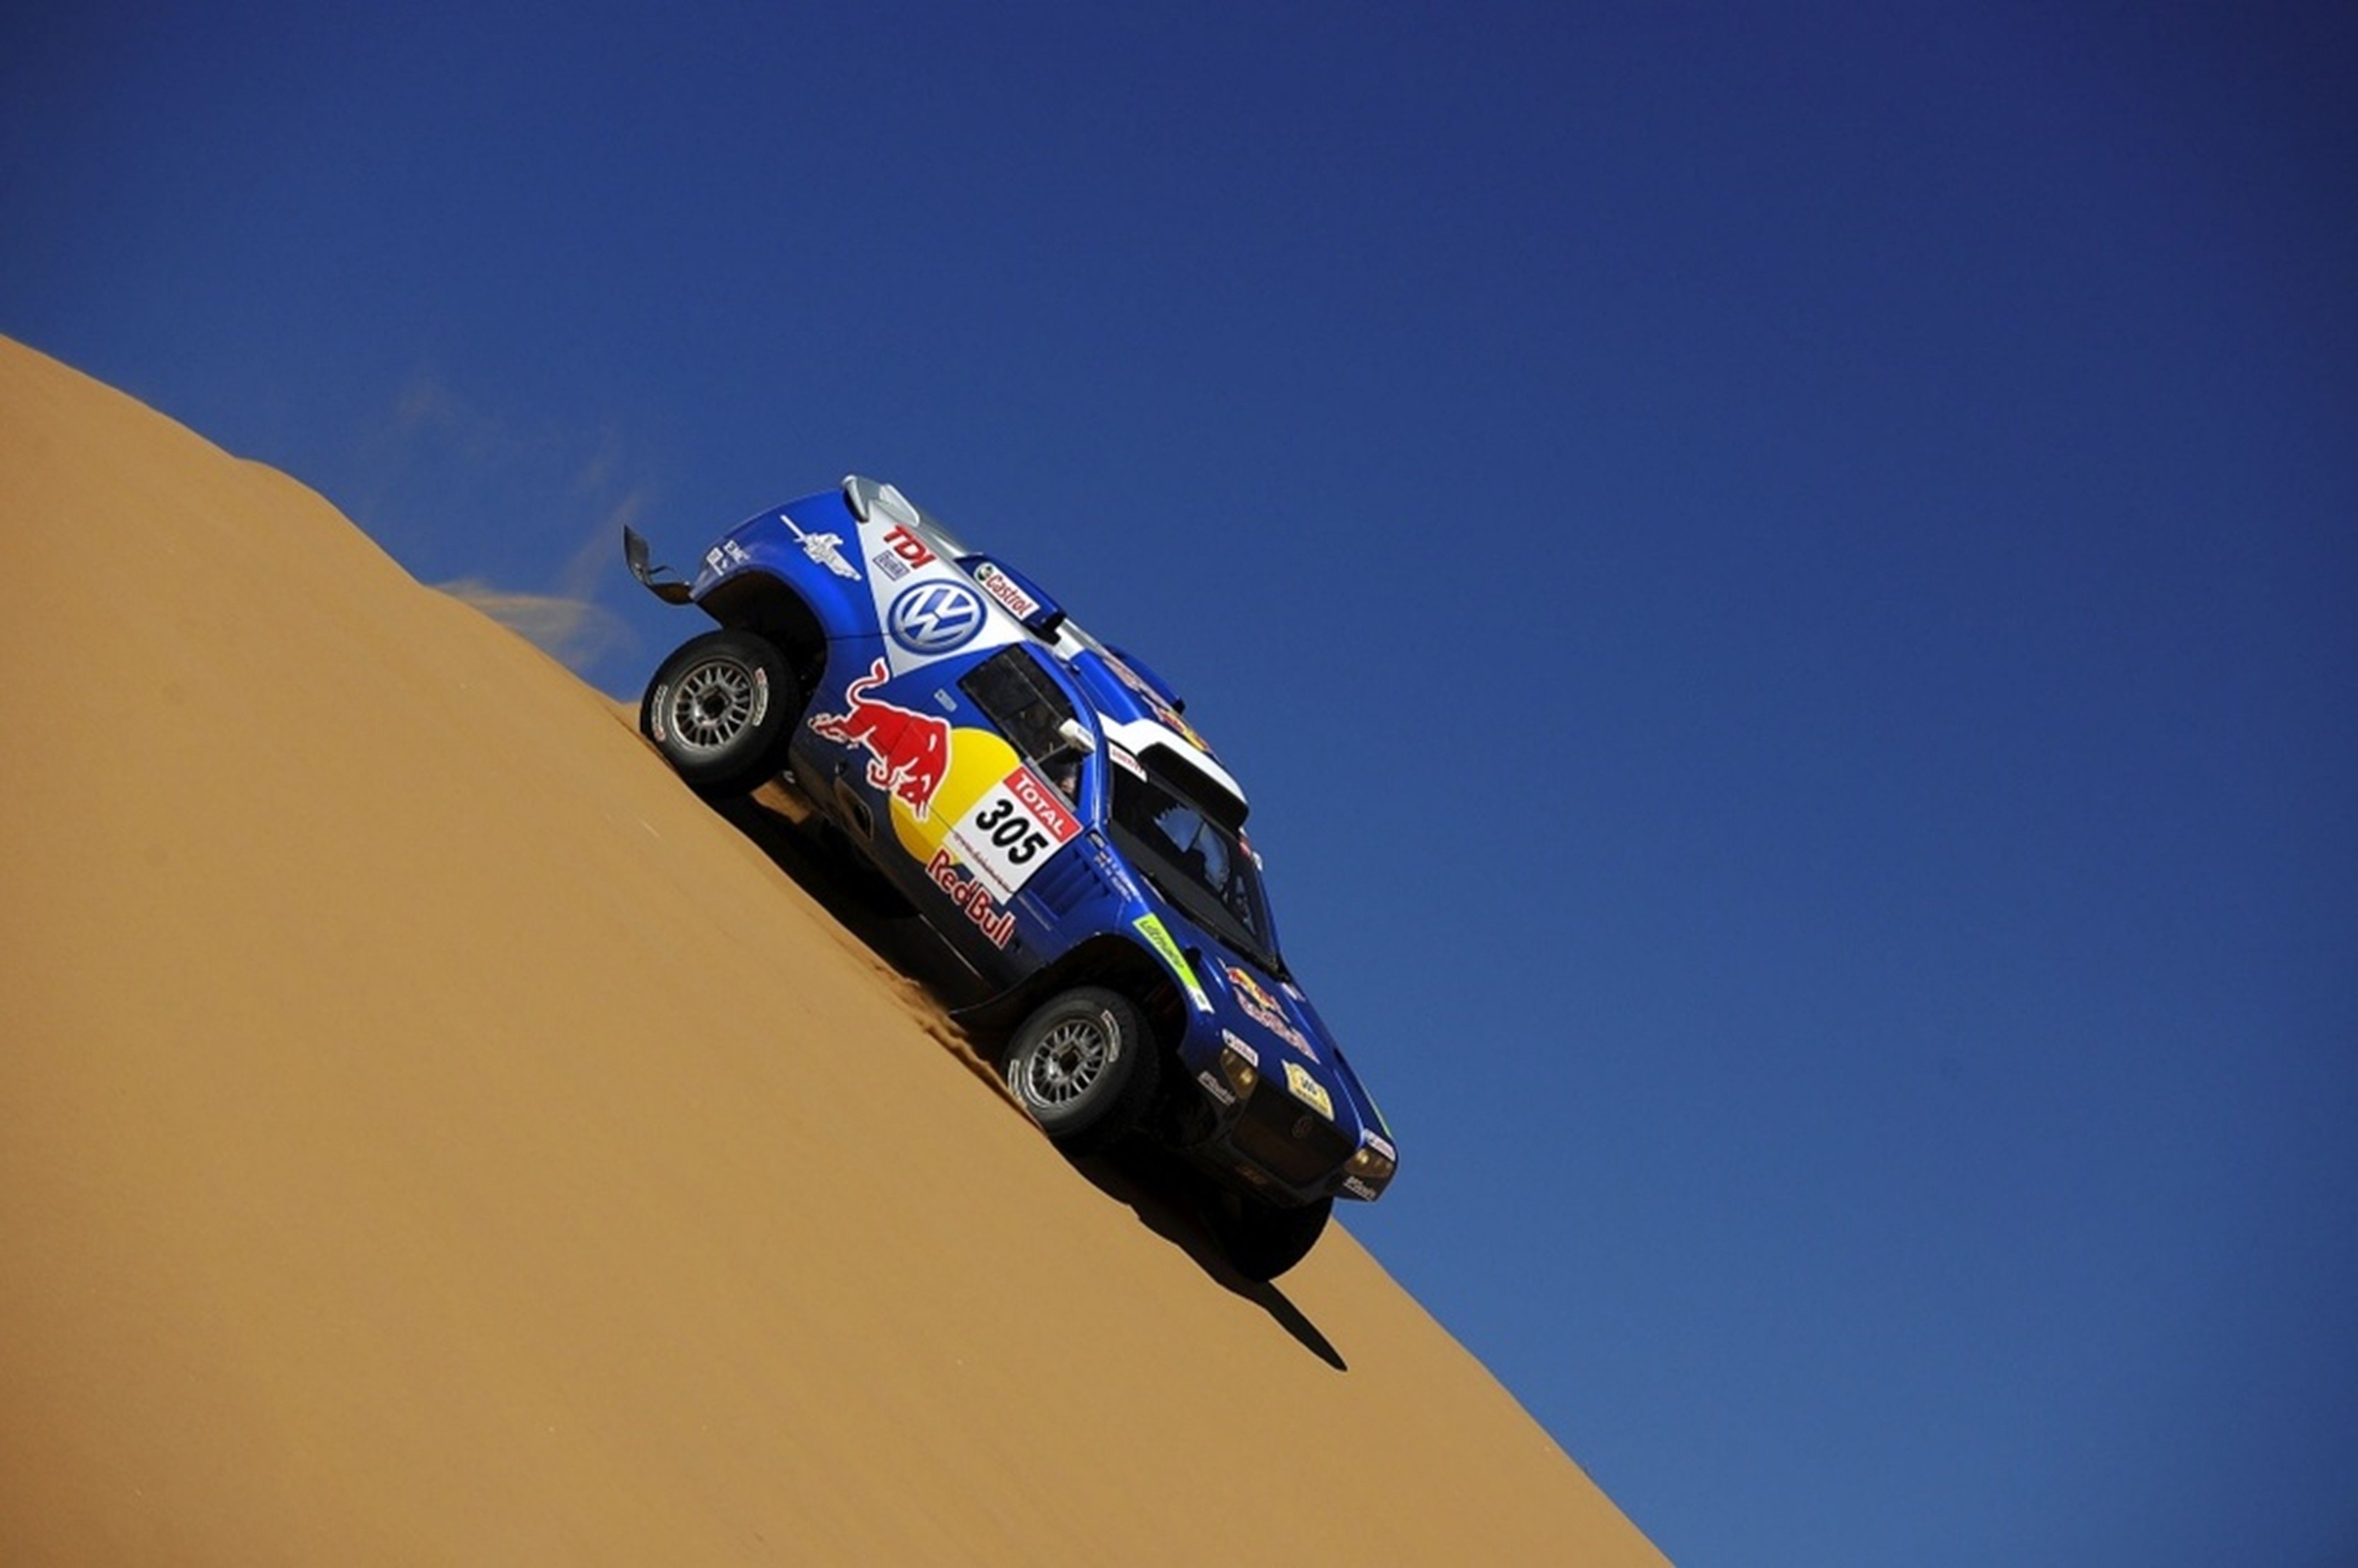 volkswagen, Race, Touareg, Dakar, Rally, Racing, Car, Sand, Desert, 4000x2660 Wallpaper